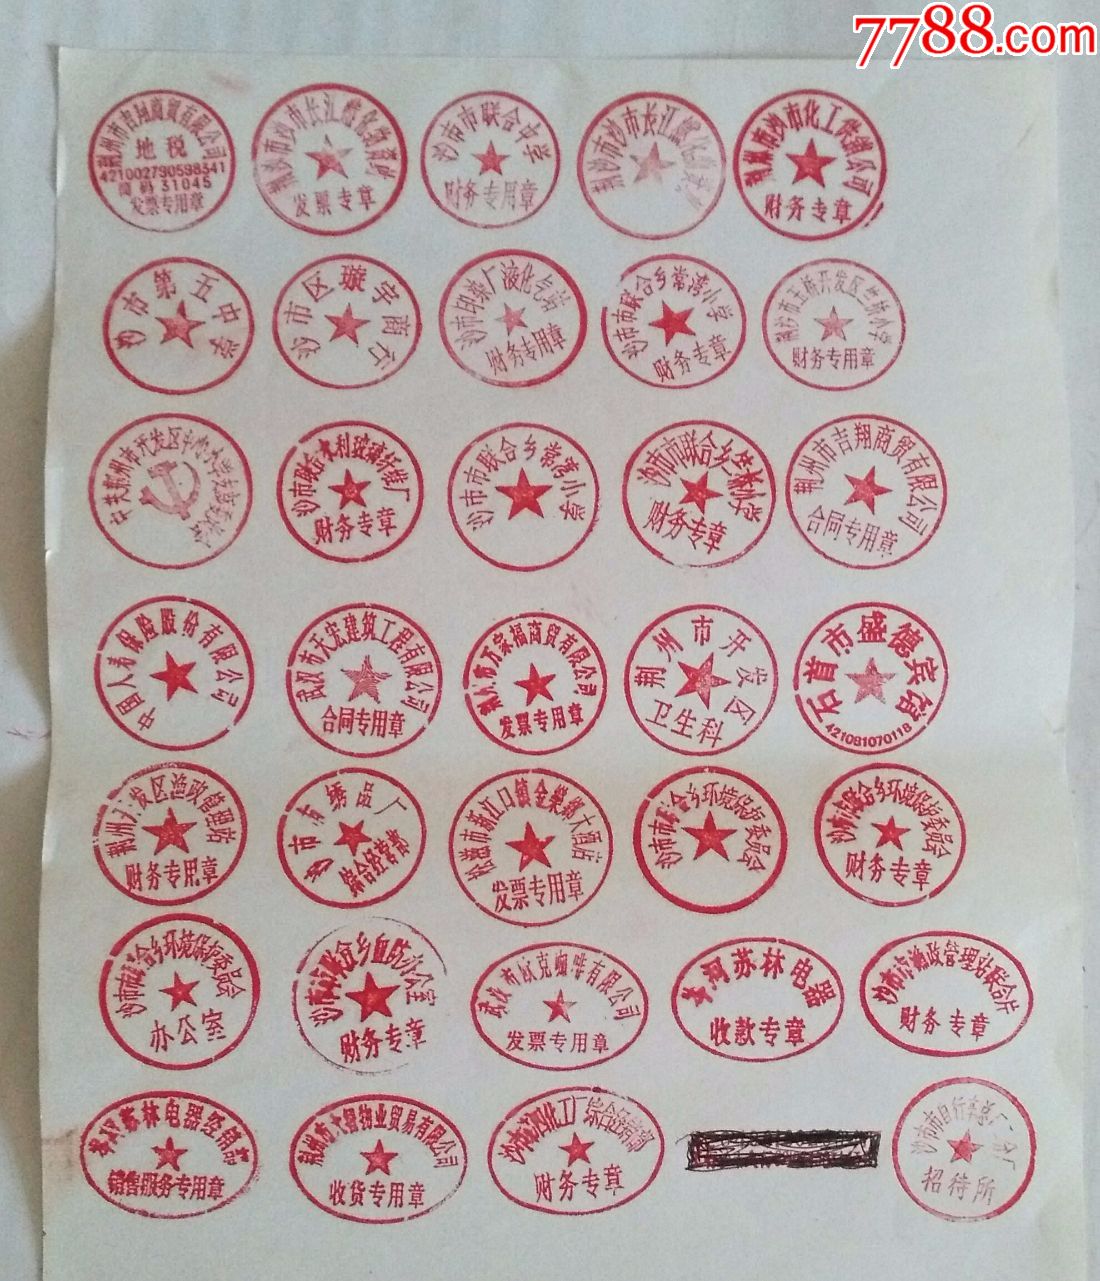 单位作废的橡皮印章(公章)(34枚合售)